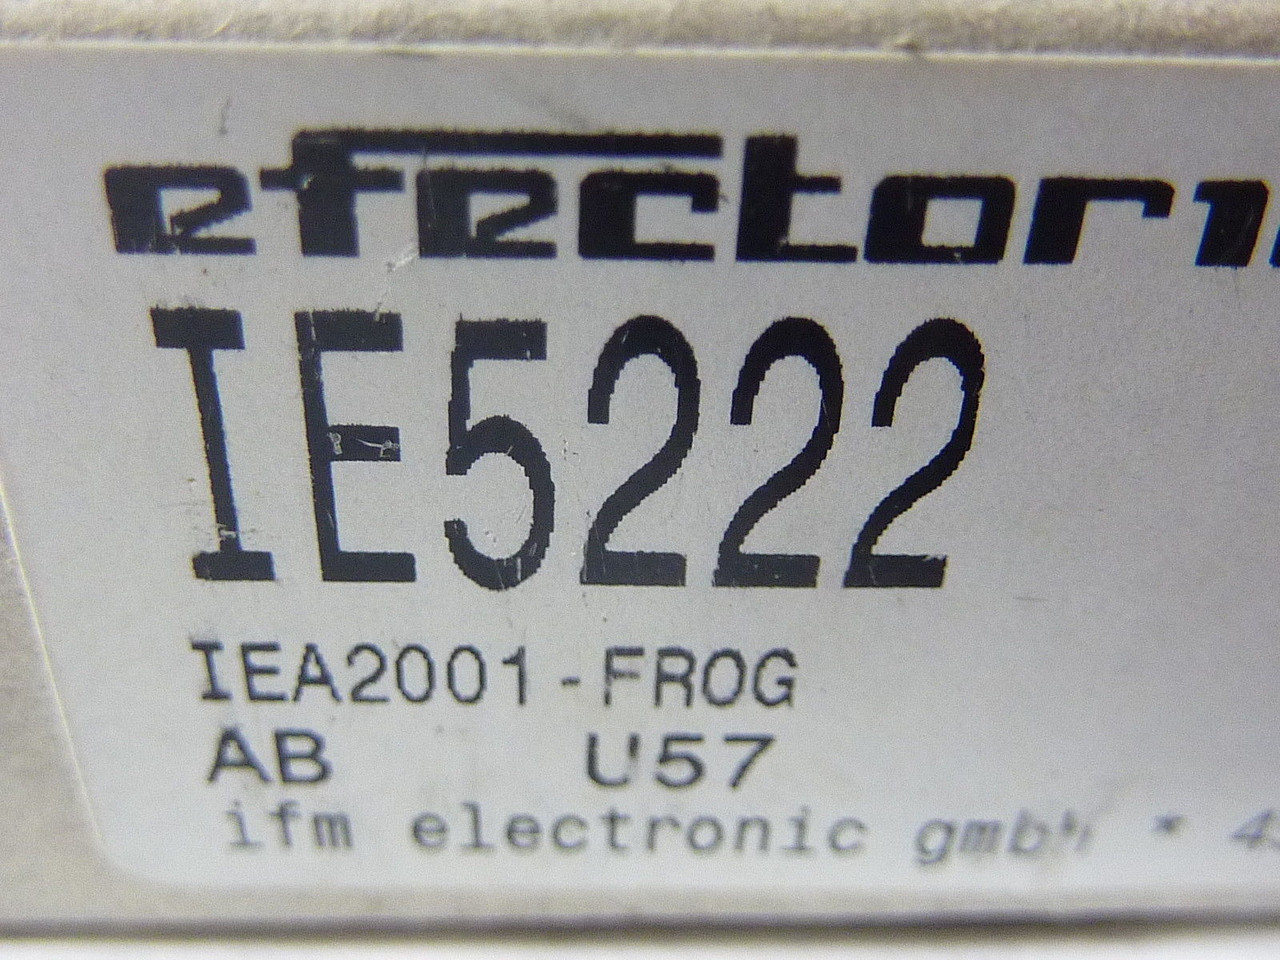 Efector IE55222 Proximity Sensor 5-36VDC ! NEW !